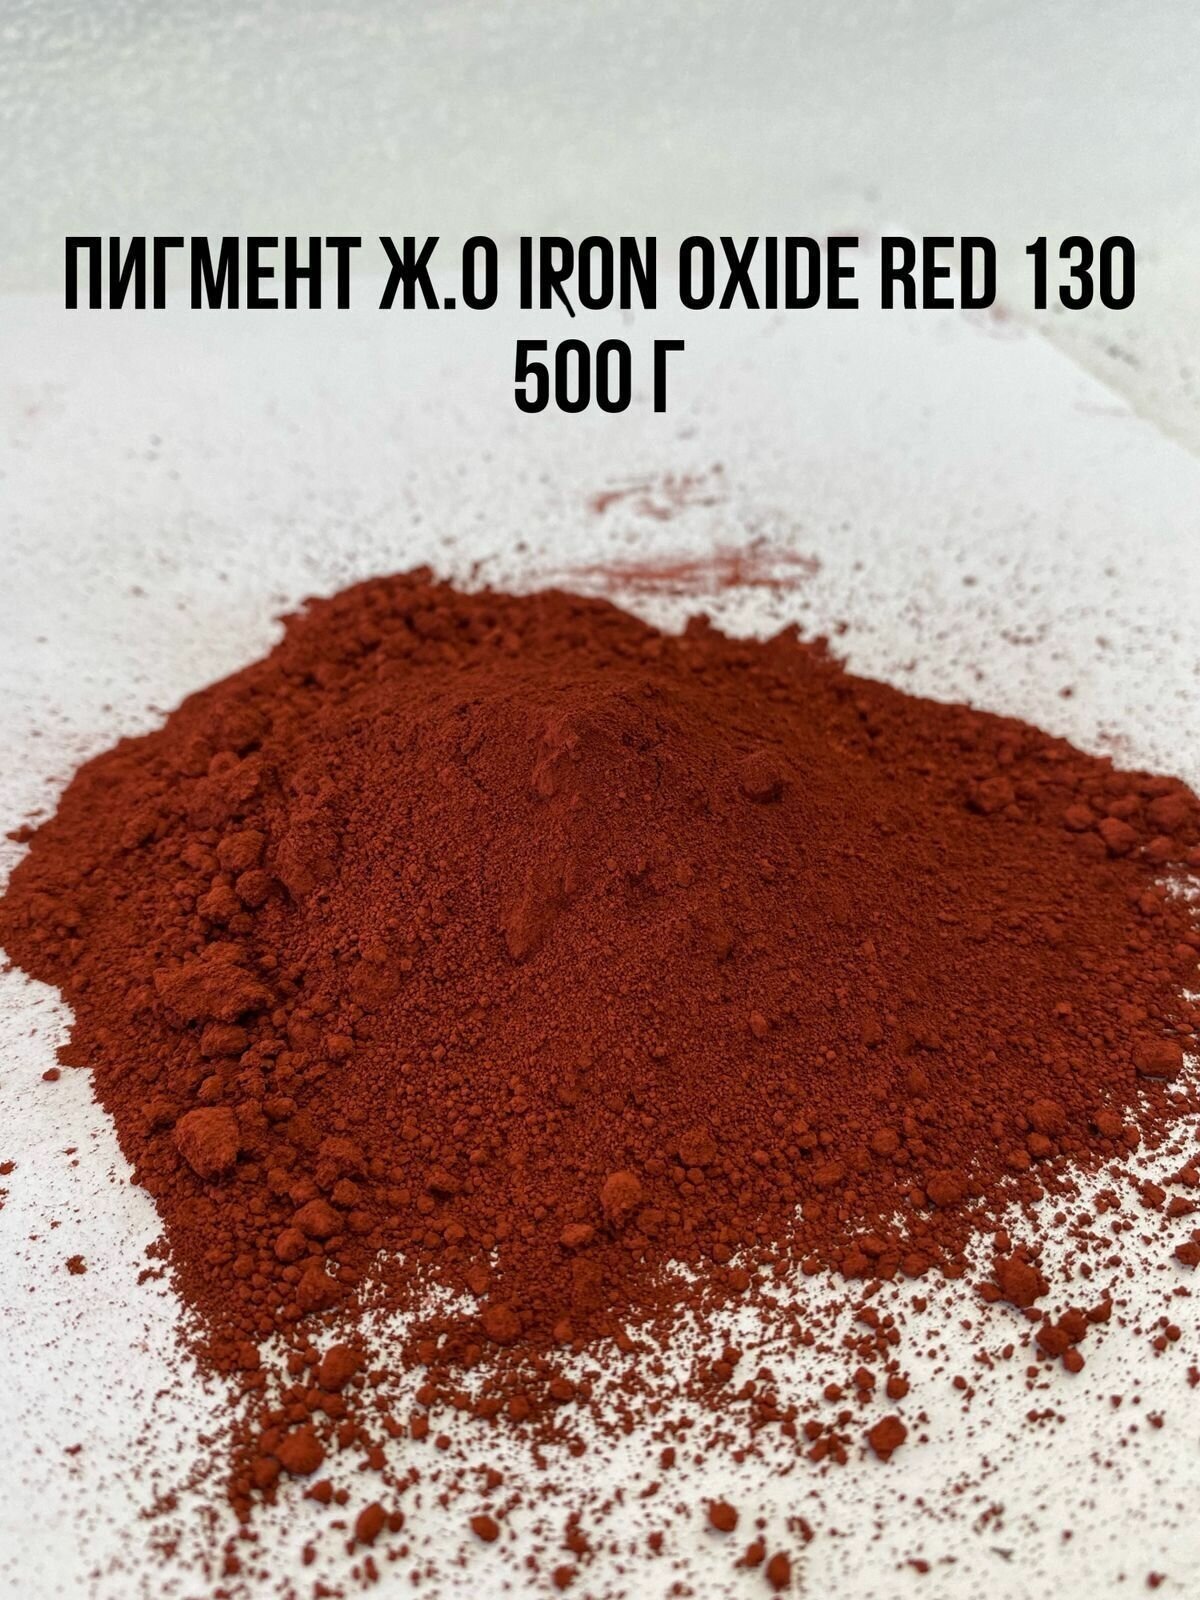 Пигмент красный железооксидный IRON OXIDE RED 130 вес 500 г Китай для Гипса краситель для Бетона Красок Творчества сухой универсальный